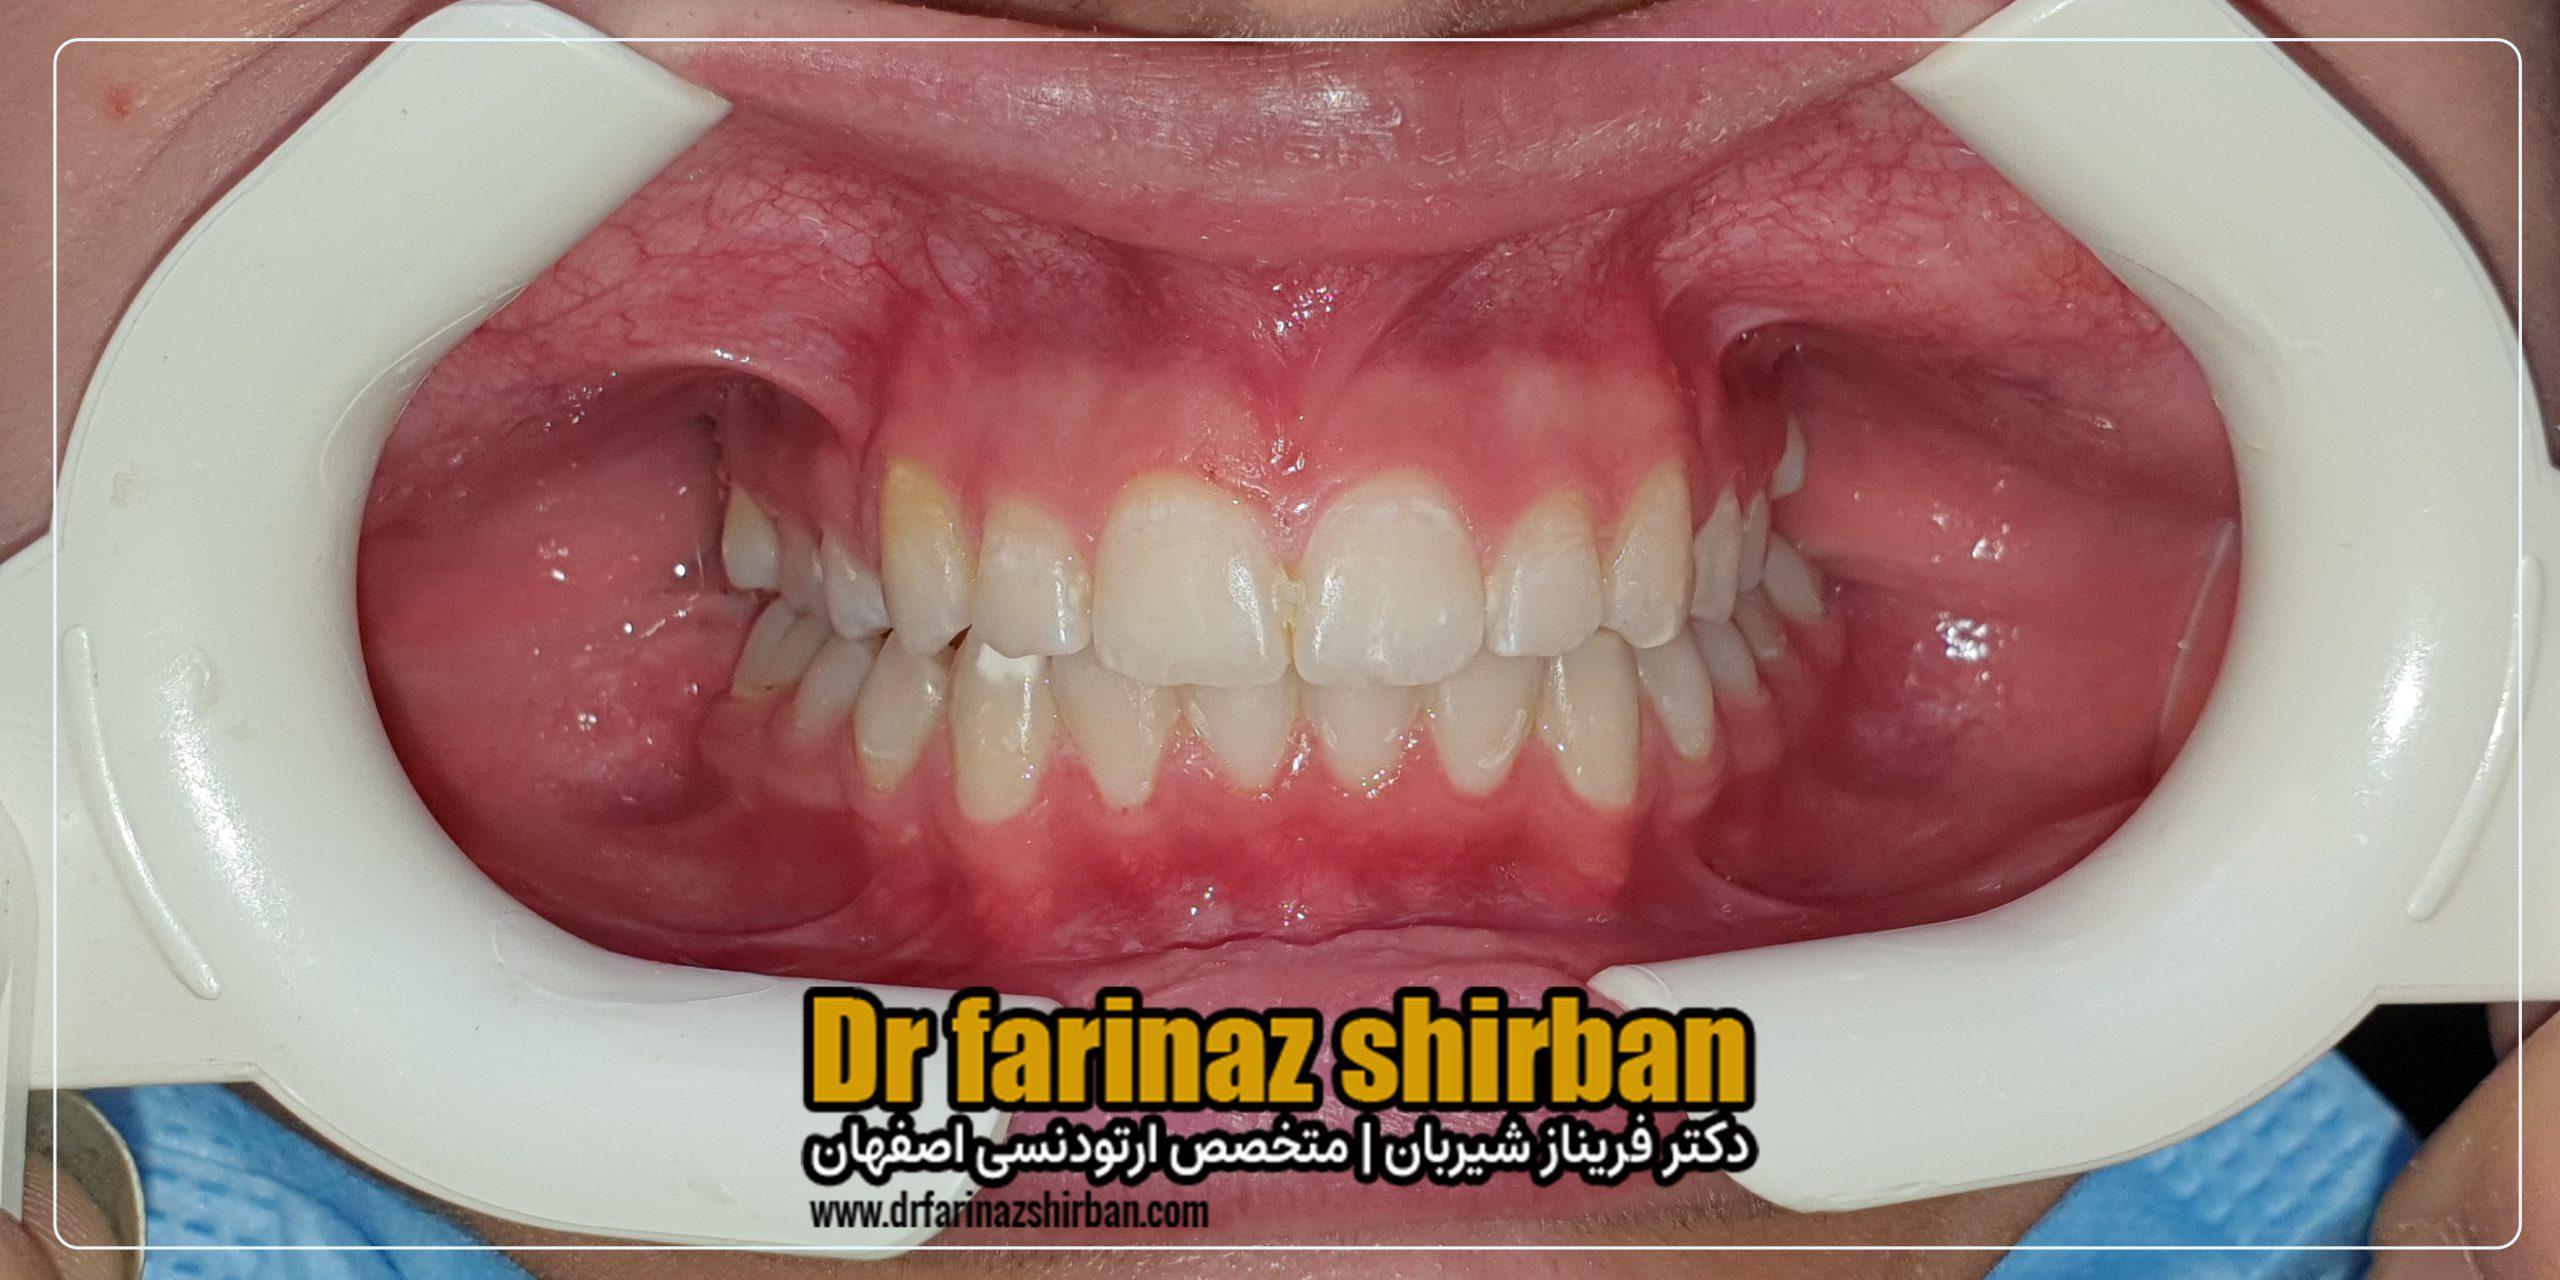 اصلاح تنگی قوس فک و نامنظمی دندان ها بدون جراحی و کشیدن دندان با متخصص ارتودنسی در اصفهان